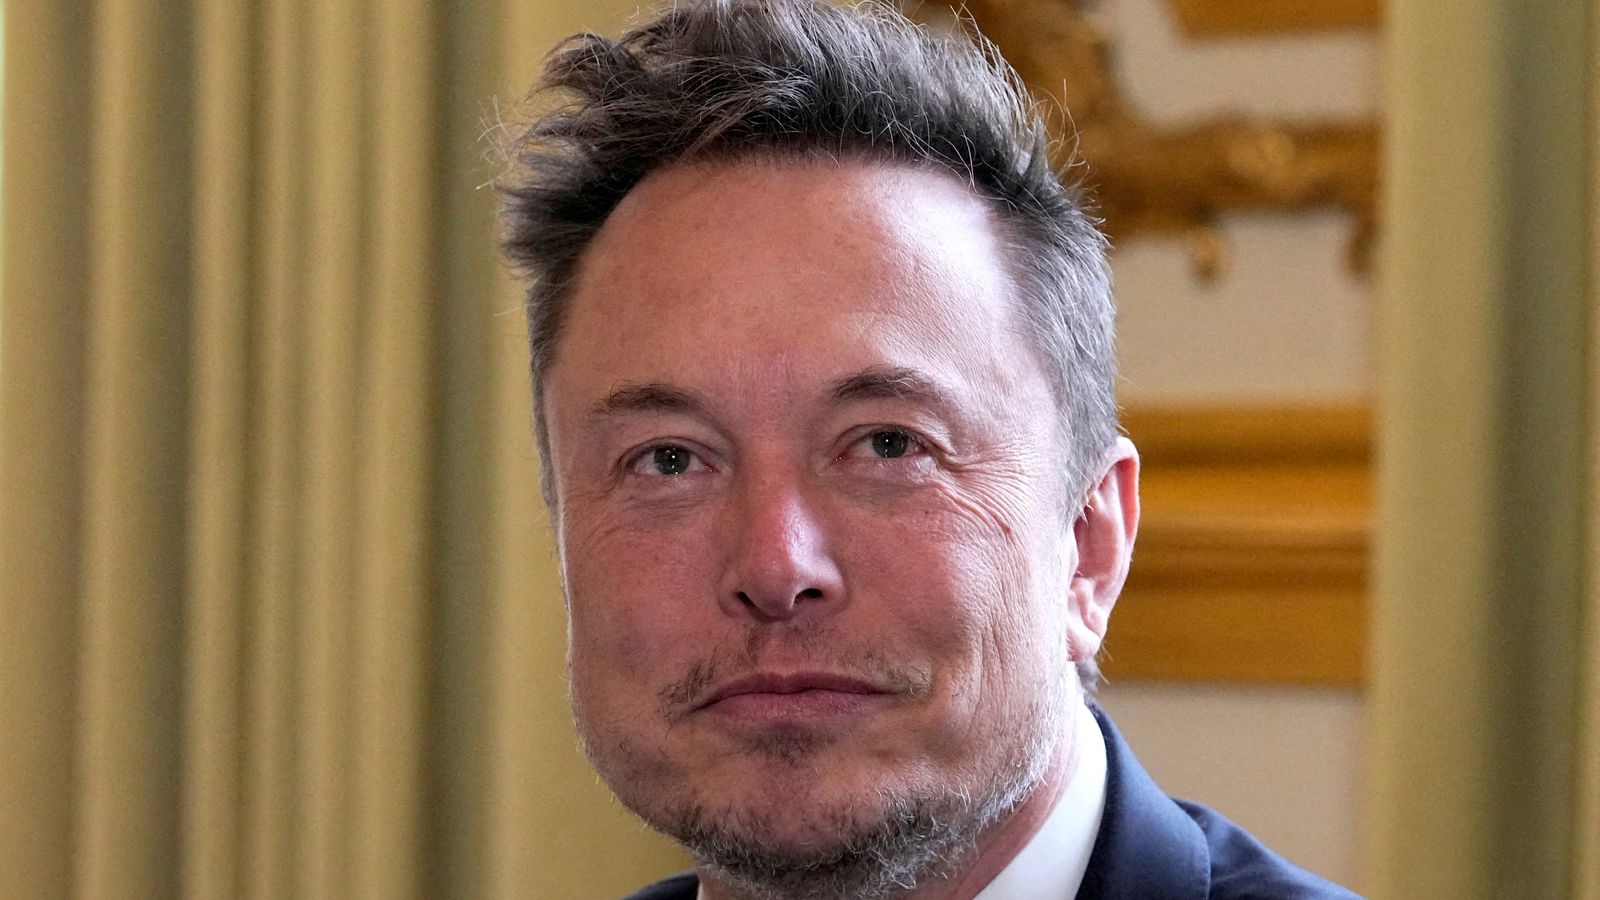 Elon Musk dit qu’il va commencer à facturer aux gens l’utilisation de X (Twitter) |  Actualités scientifiques et technologiques